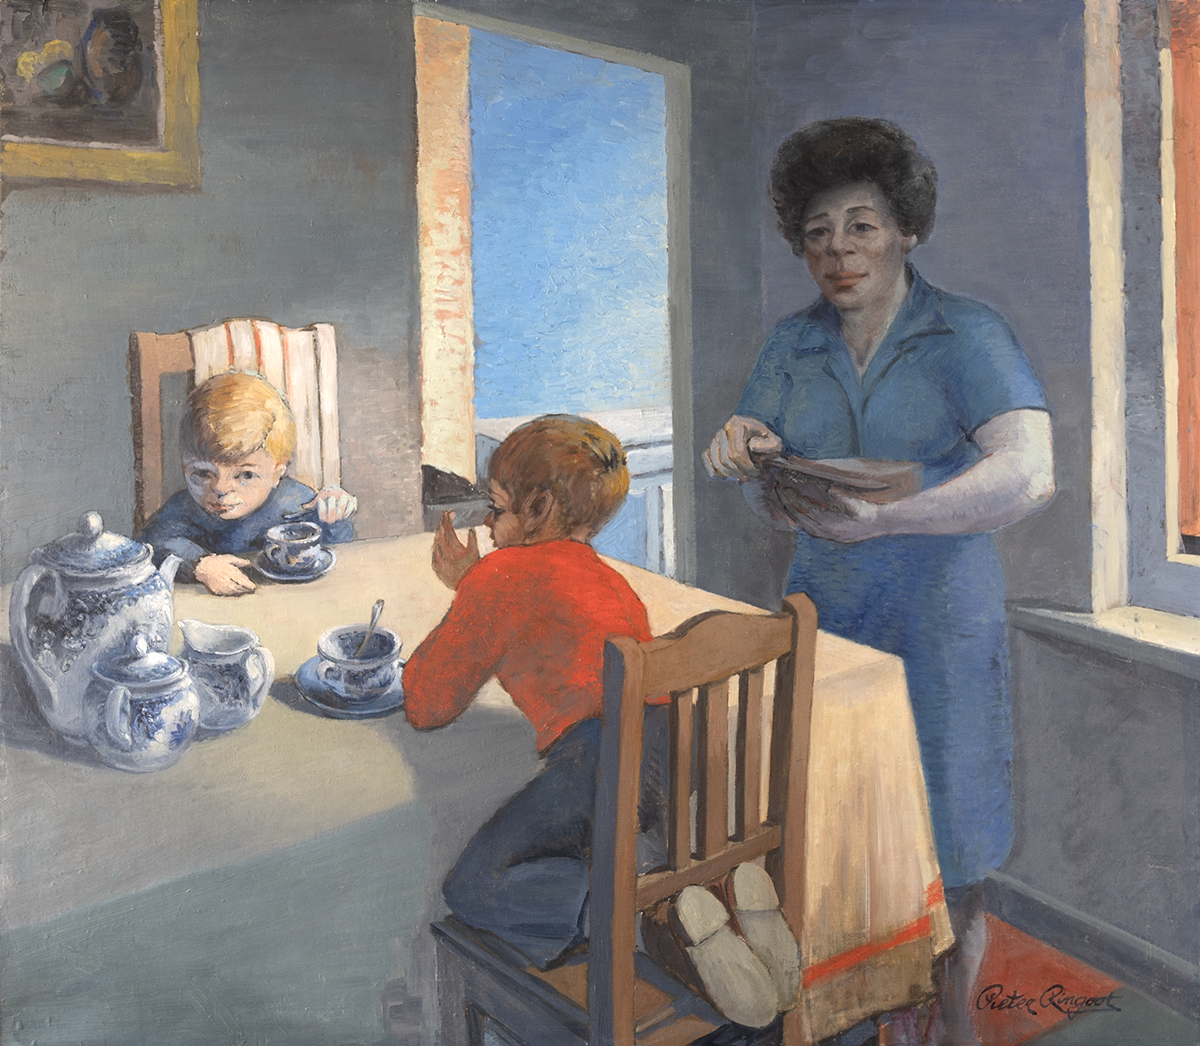 Maria Verdoodt, vrouw van de kunstenaar met haar kleinkinderen aan de ontbijttafel te Lebbeke. olieverf op doek.